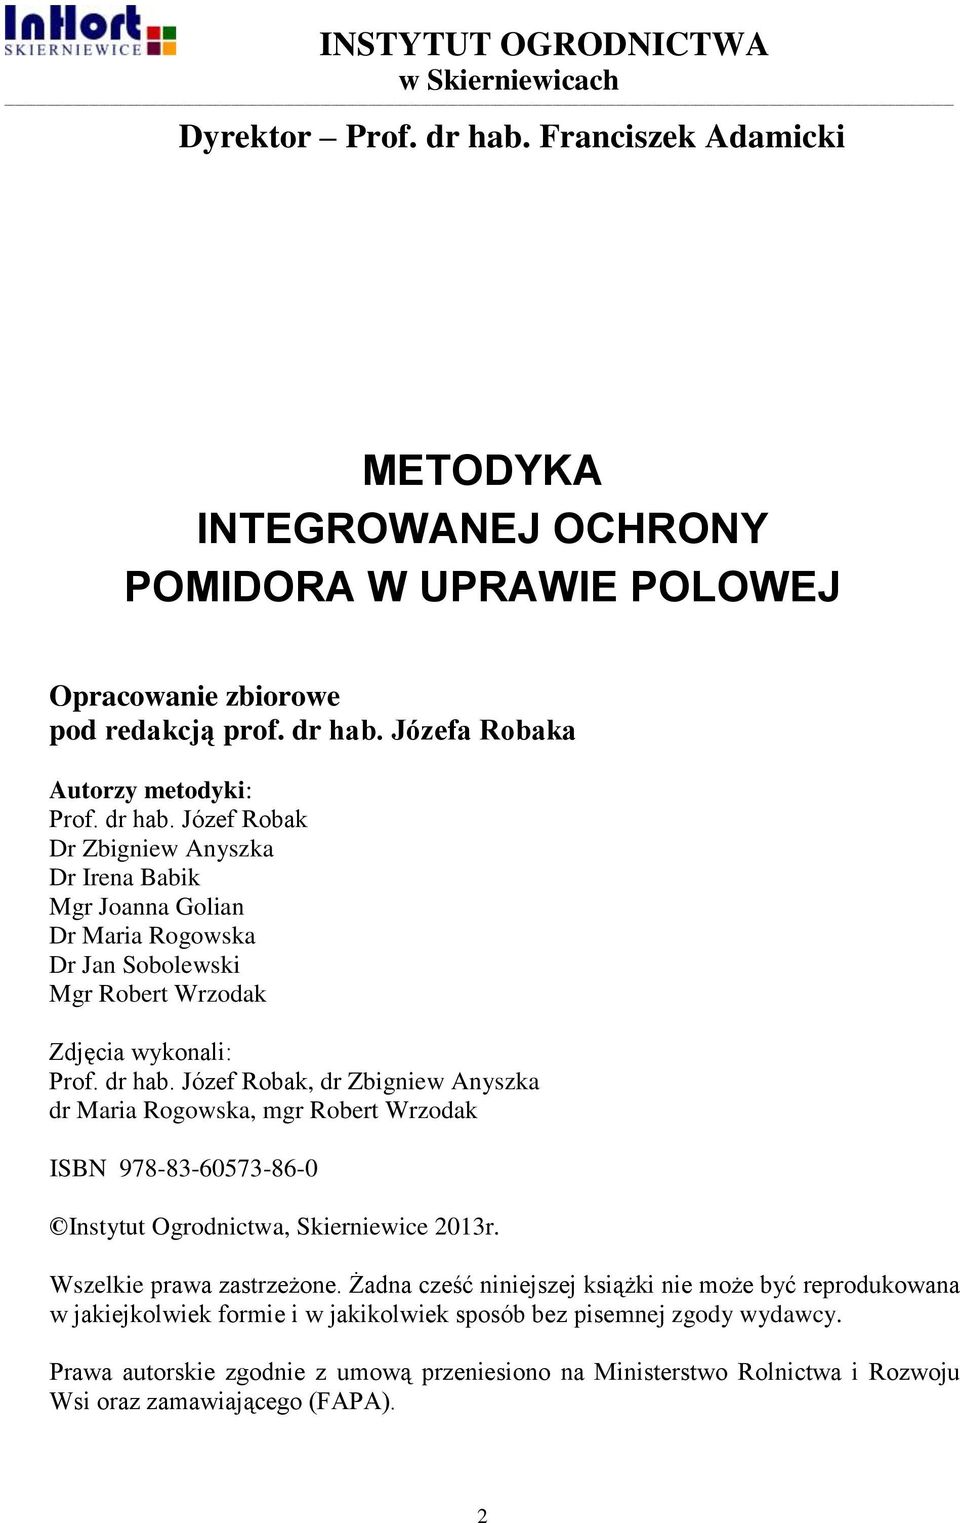 Józef Robak, dr Zbigniew Anyszka dr Maria Rogowska, mgr Robert Wrzodak ISBN 978-83-60573-86-0 Instytut Ogrodnictwa, Skierniewice 2013r. Wszelkie prawa zastrzeżone.